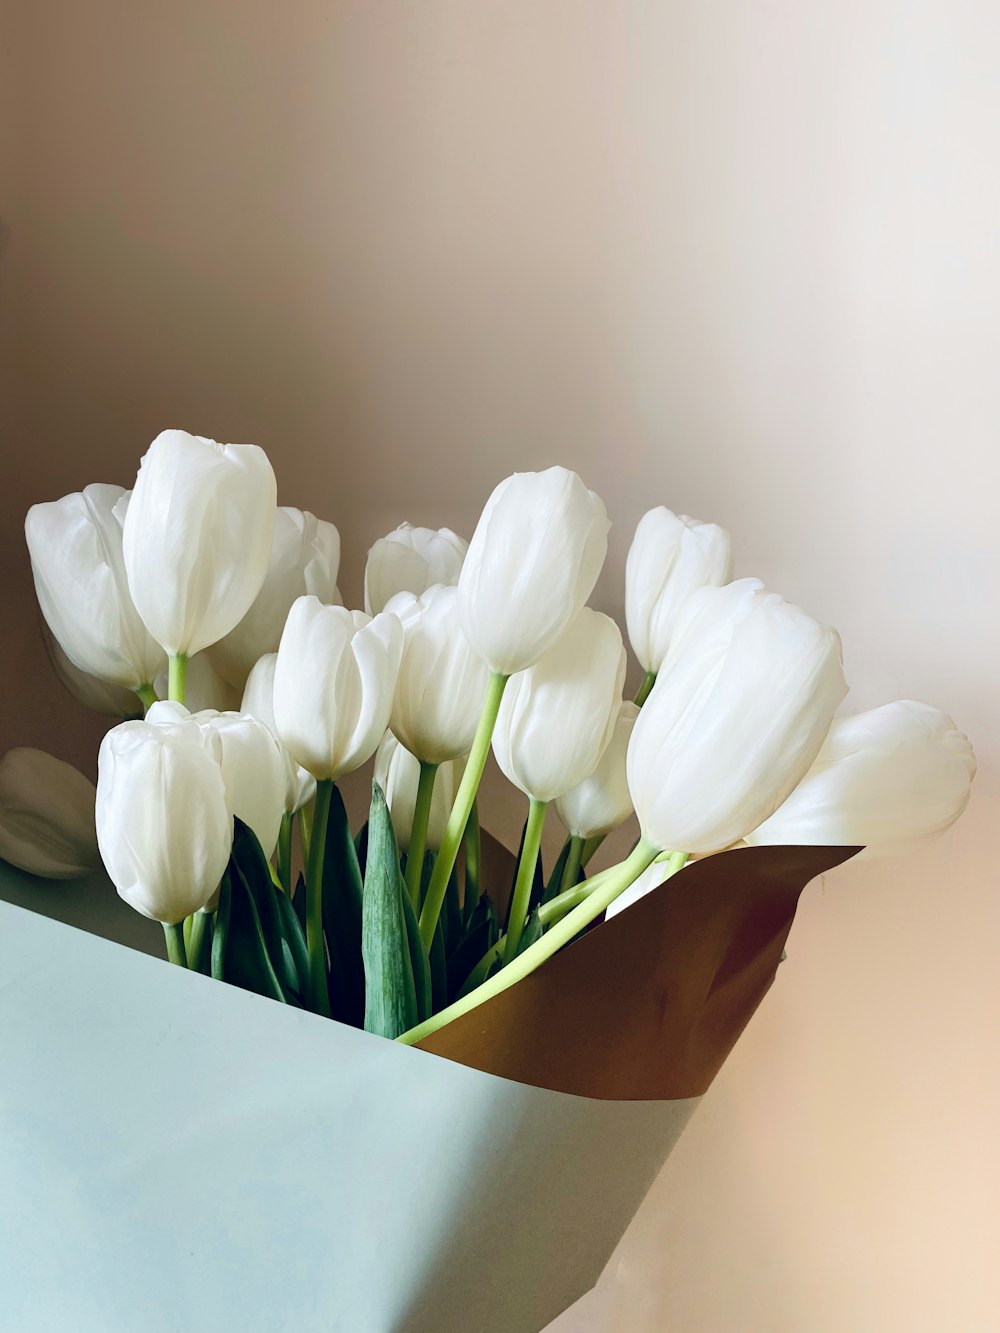 Tulipes blanches dans un vase brun